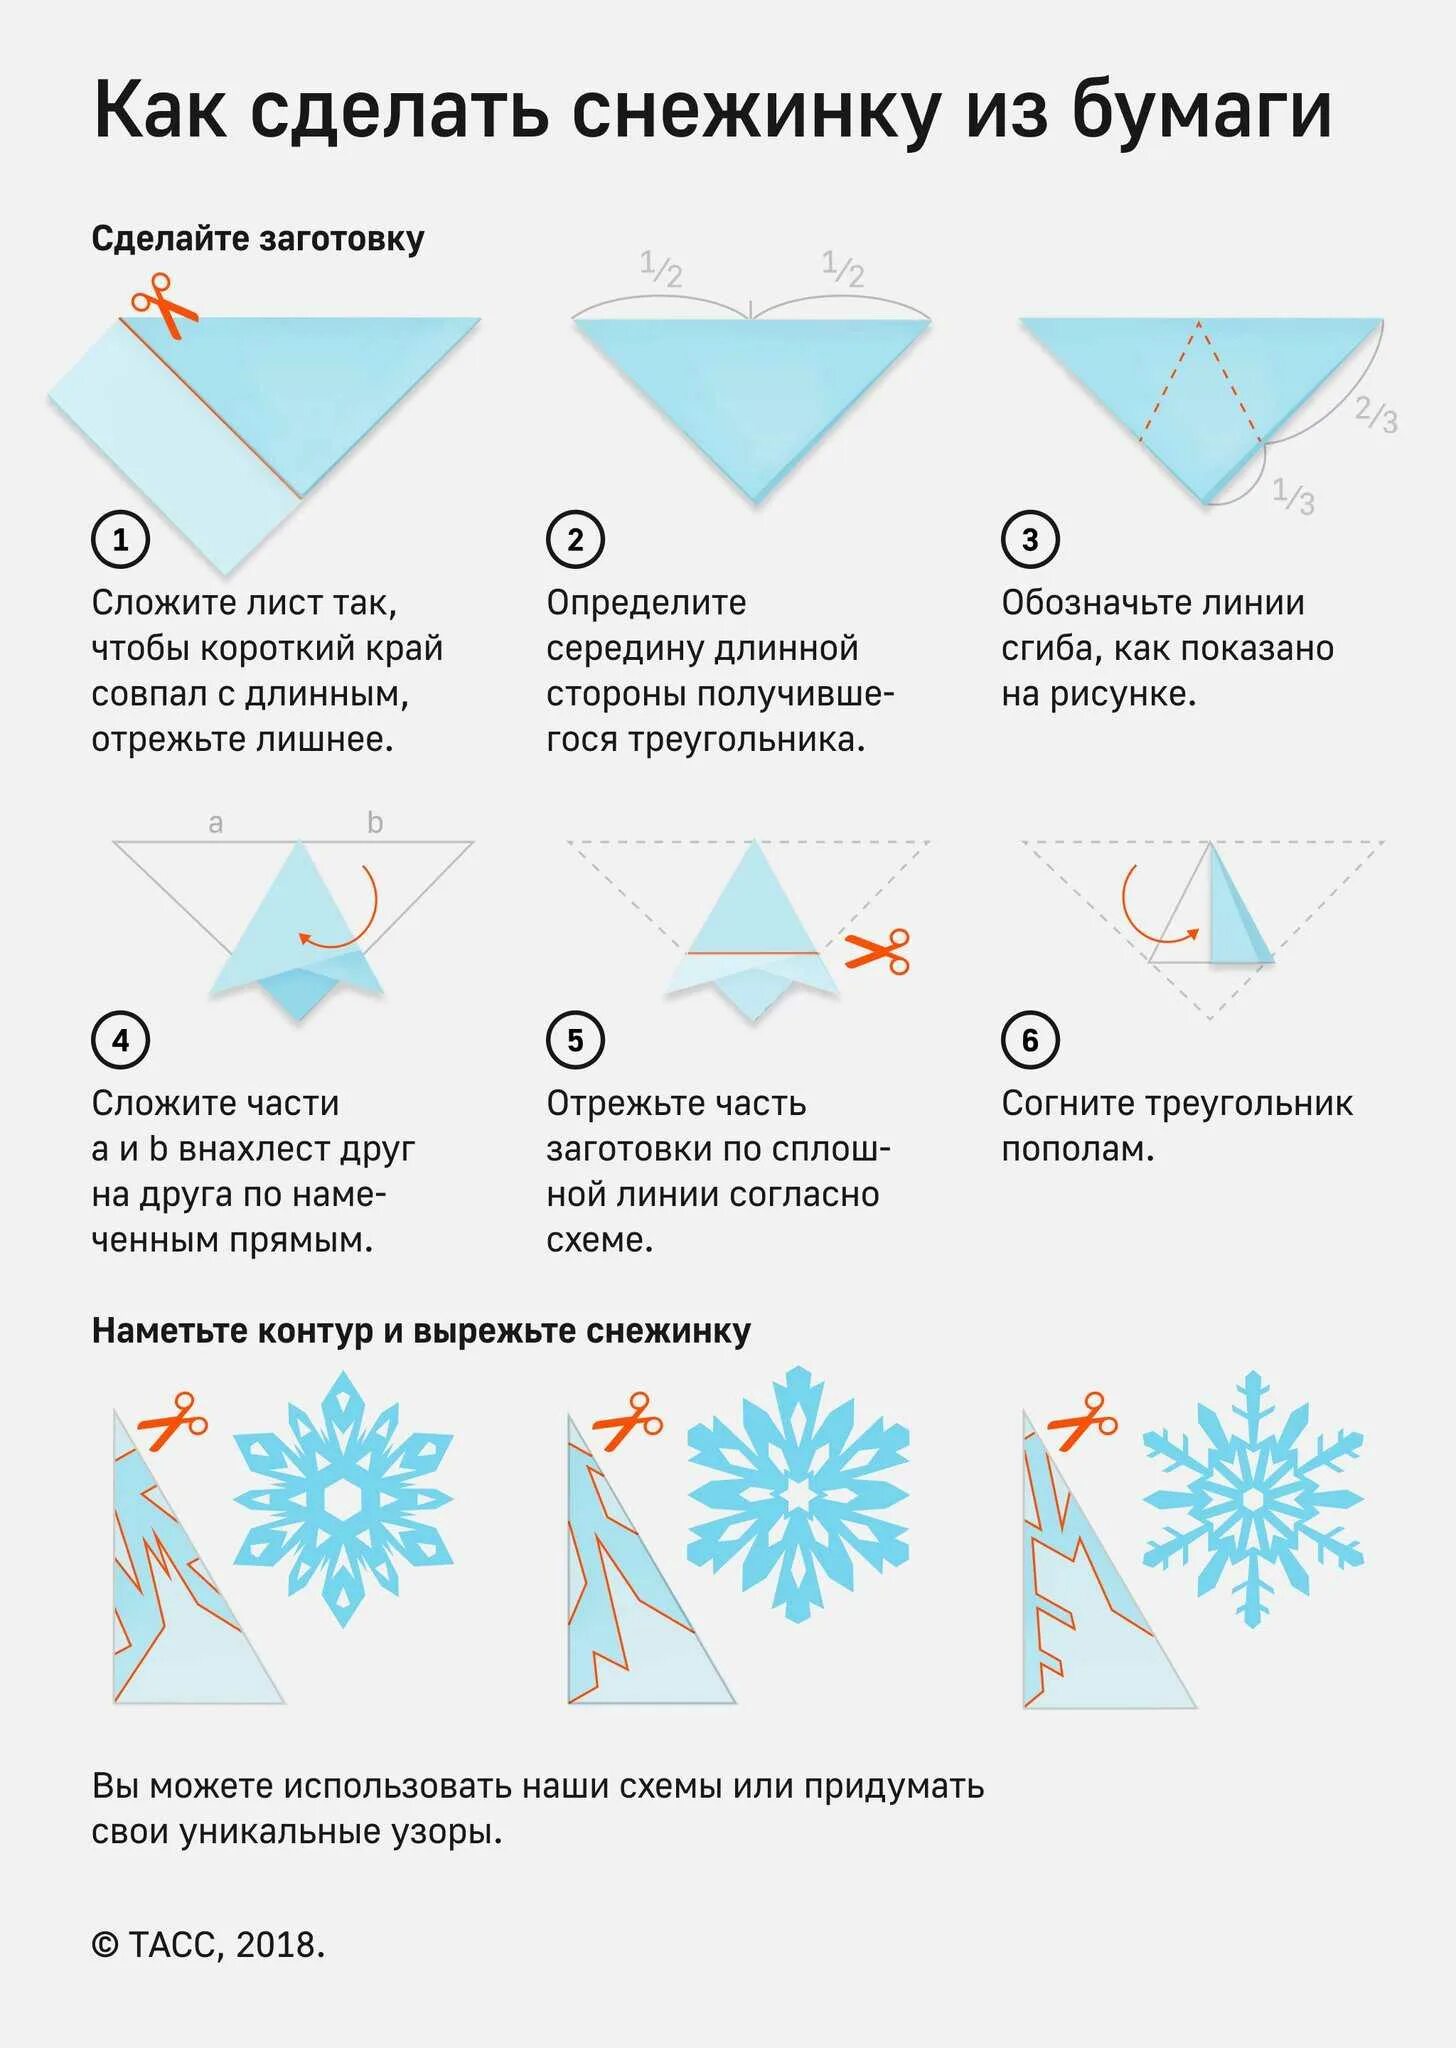 Простые снежинки из бумаги своими руками пошаговая инструкция. Как делать снежинки из бумаги пошагово. Как вырезать снежинку из бумаги легко пошагово. Как сделать снежинку из бумаги пошагово. Как вырезать снежинку из бумаги